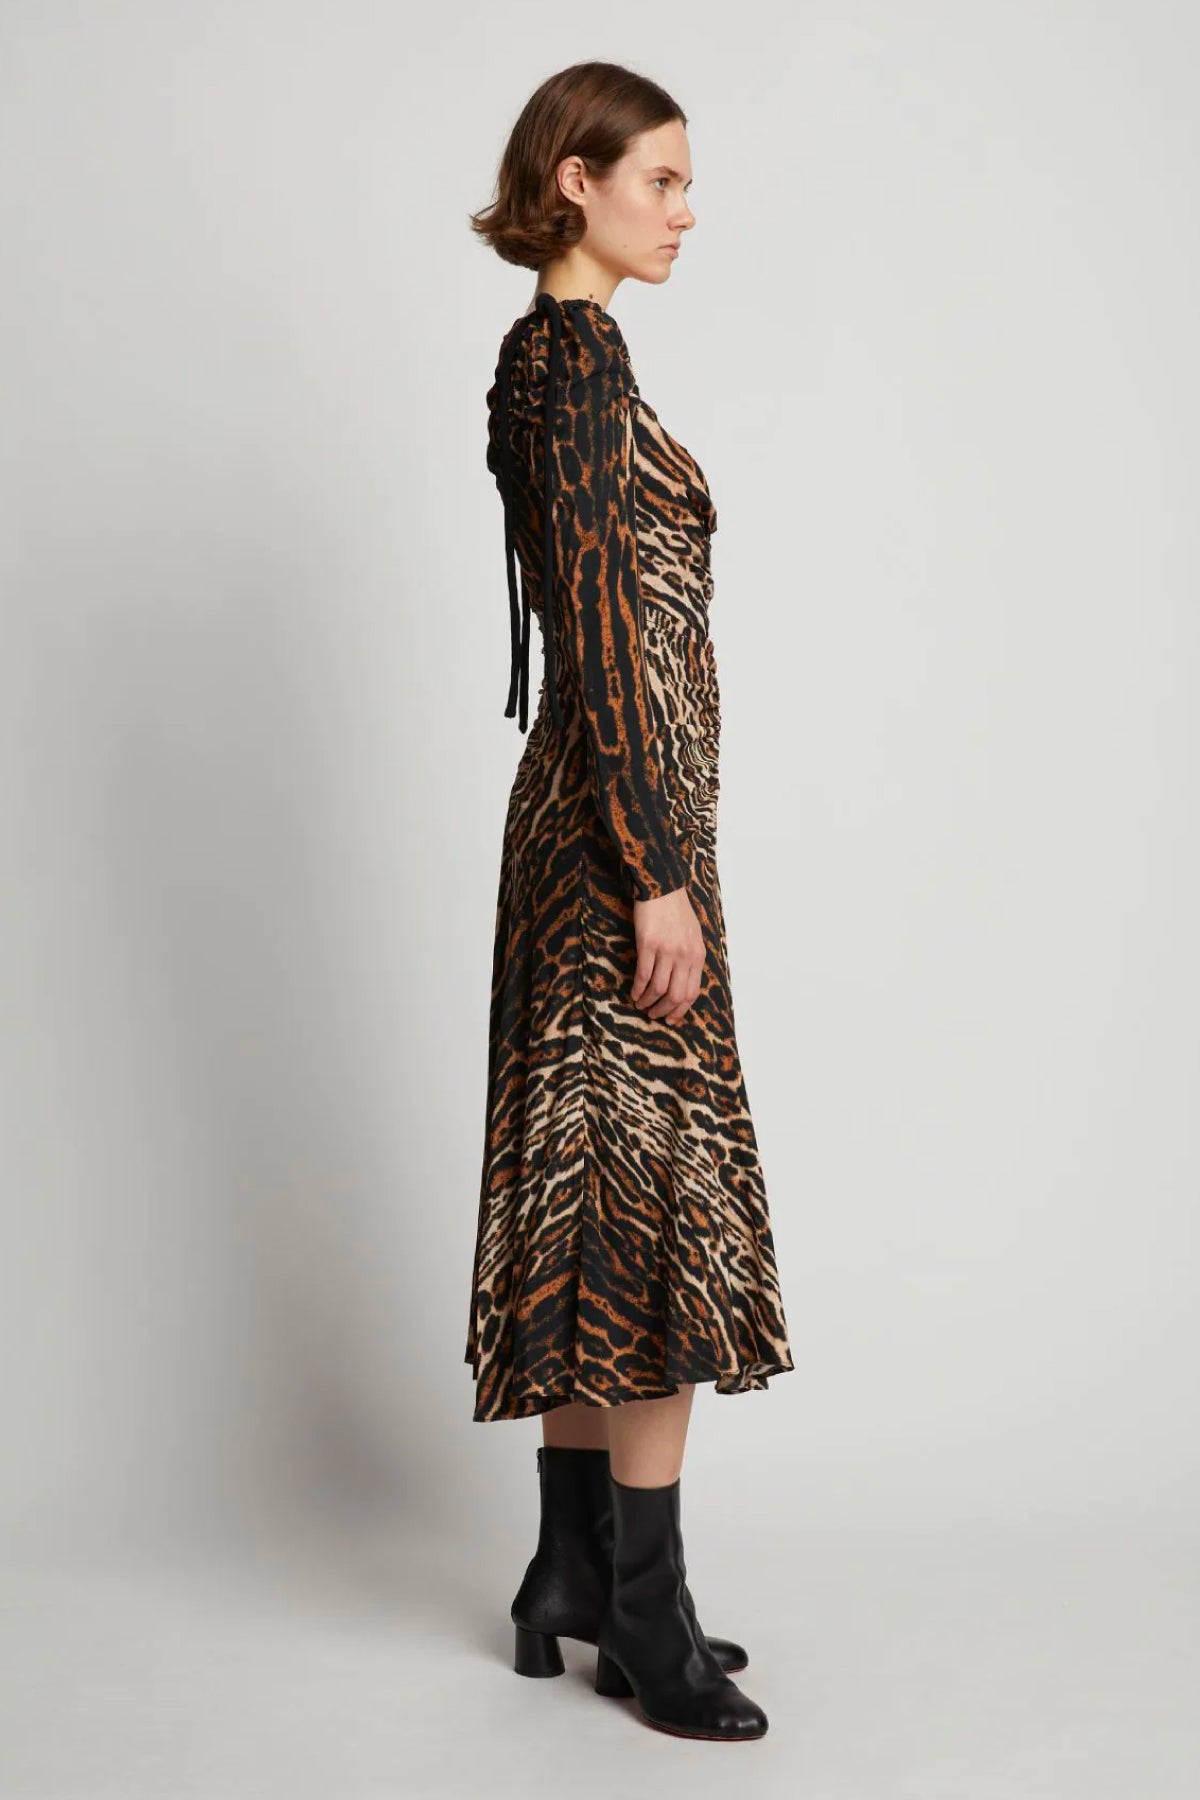 Proenza Schouler Leopard Print Cinched Dress - Brown Multi